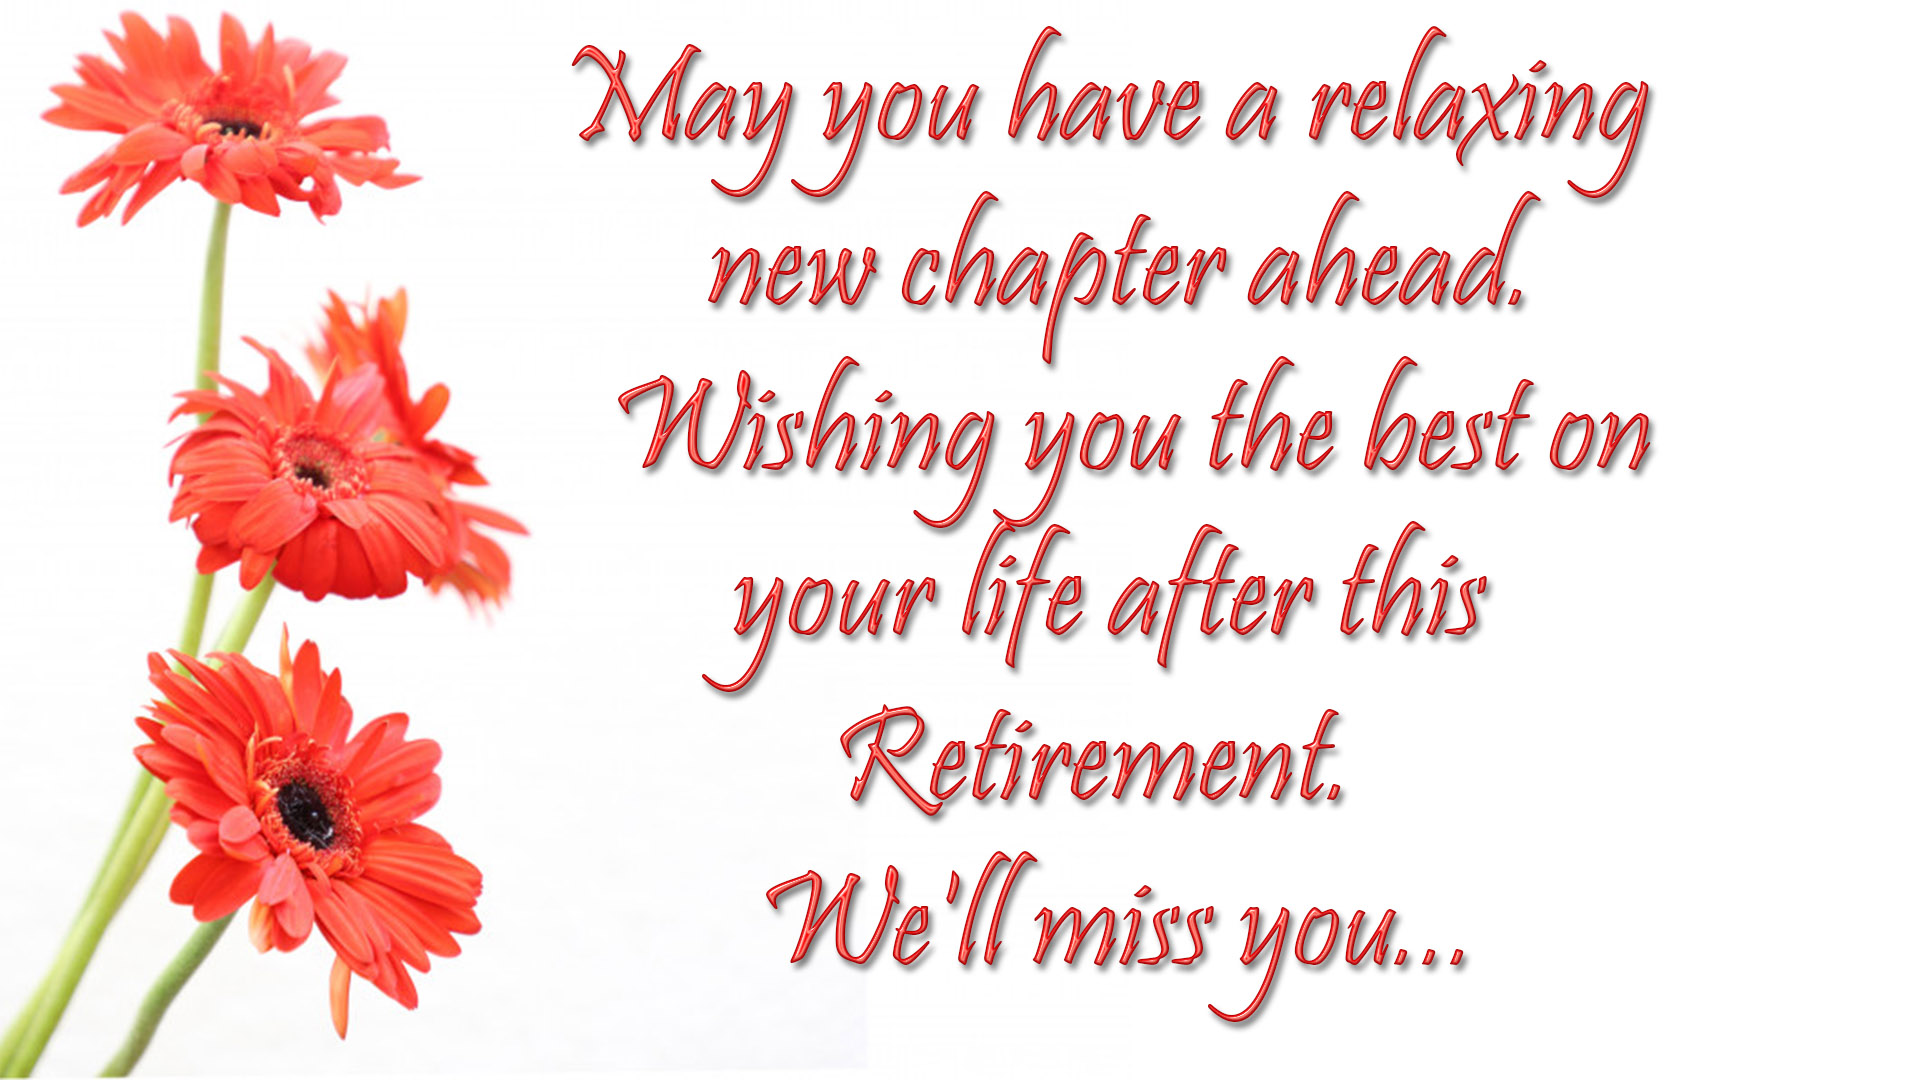 Happy Retirement Phrases